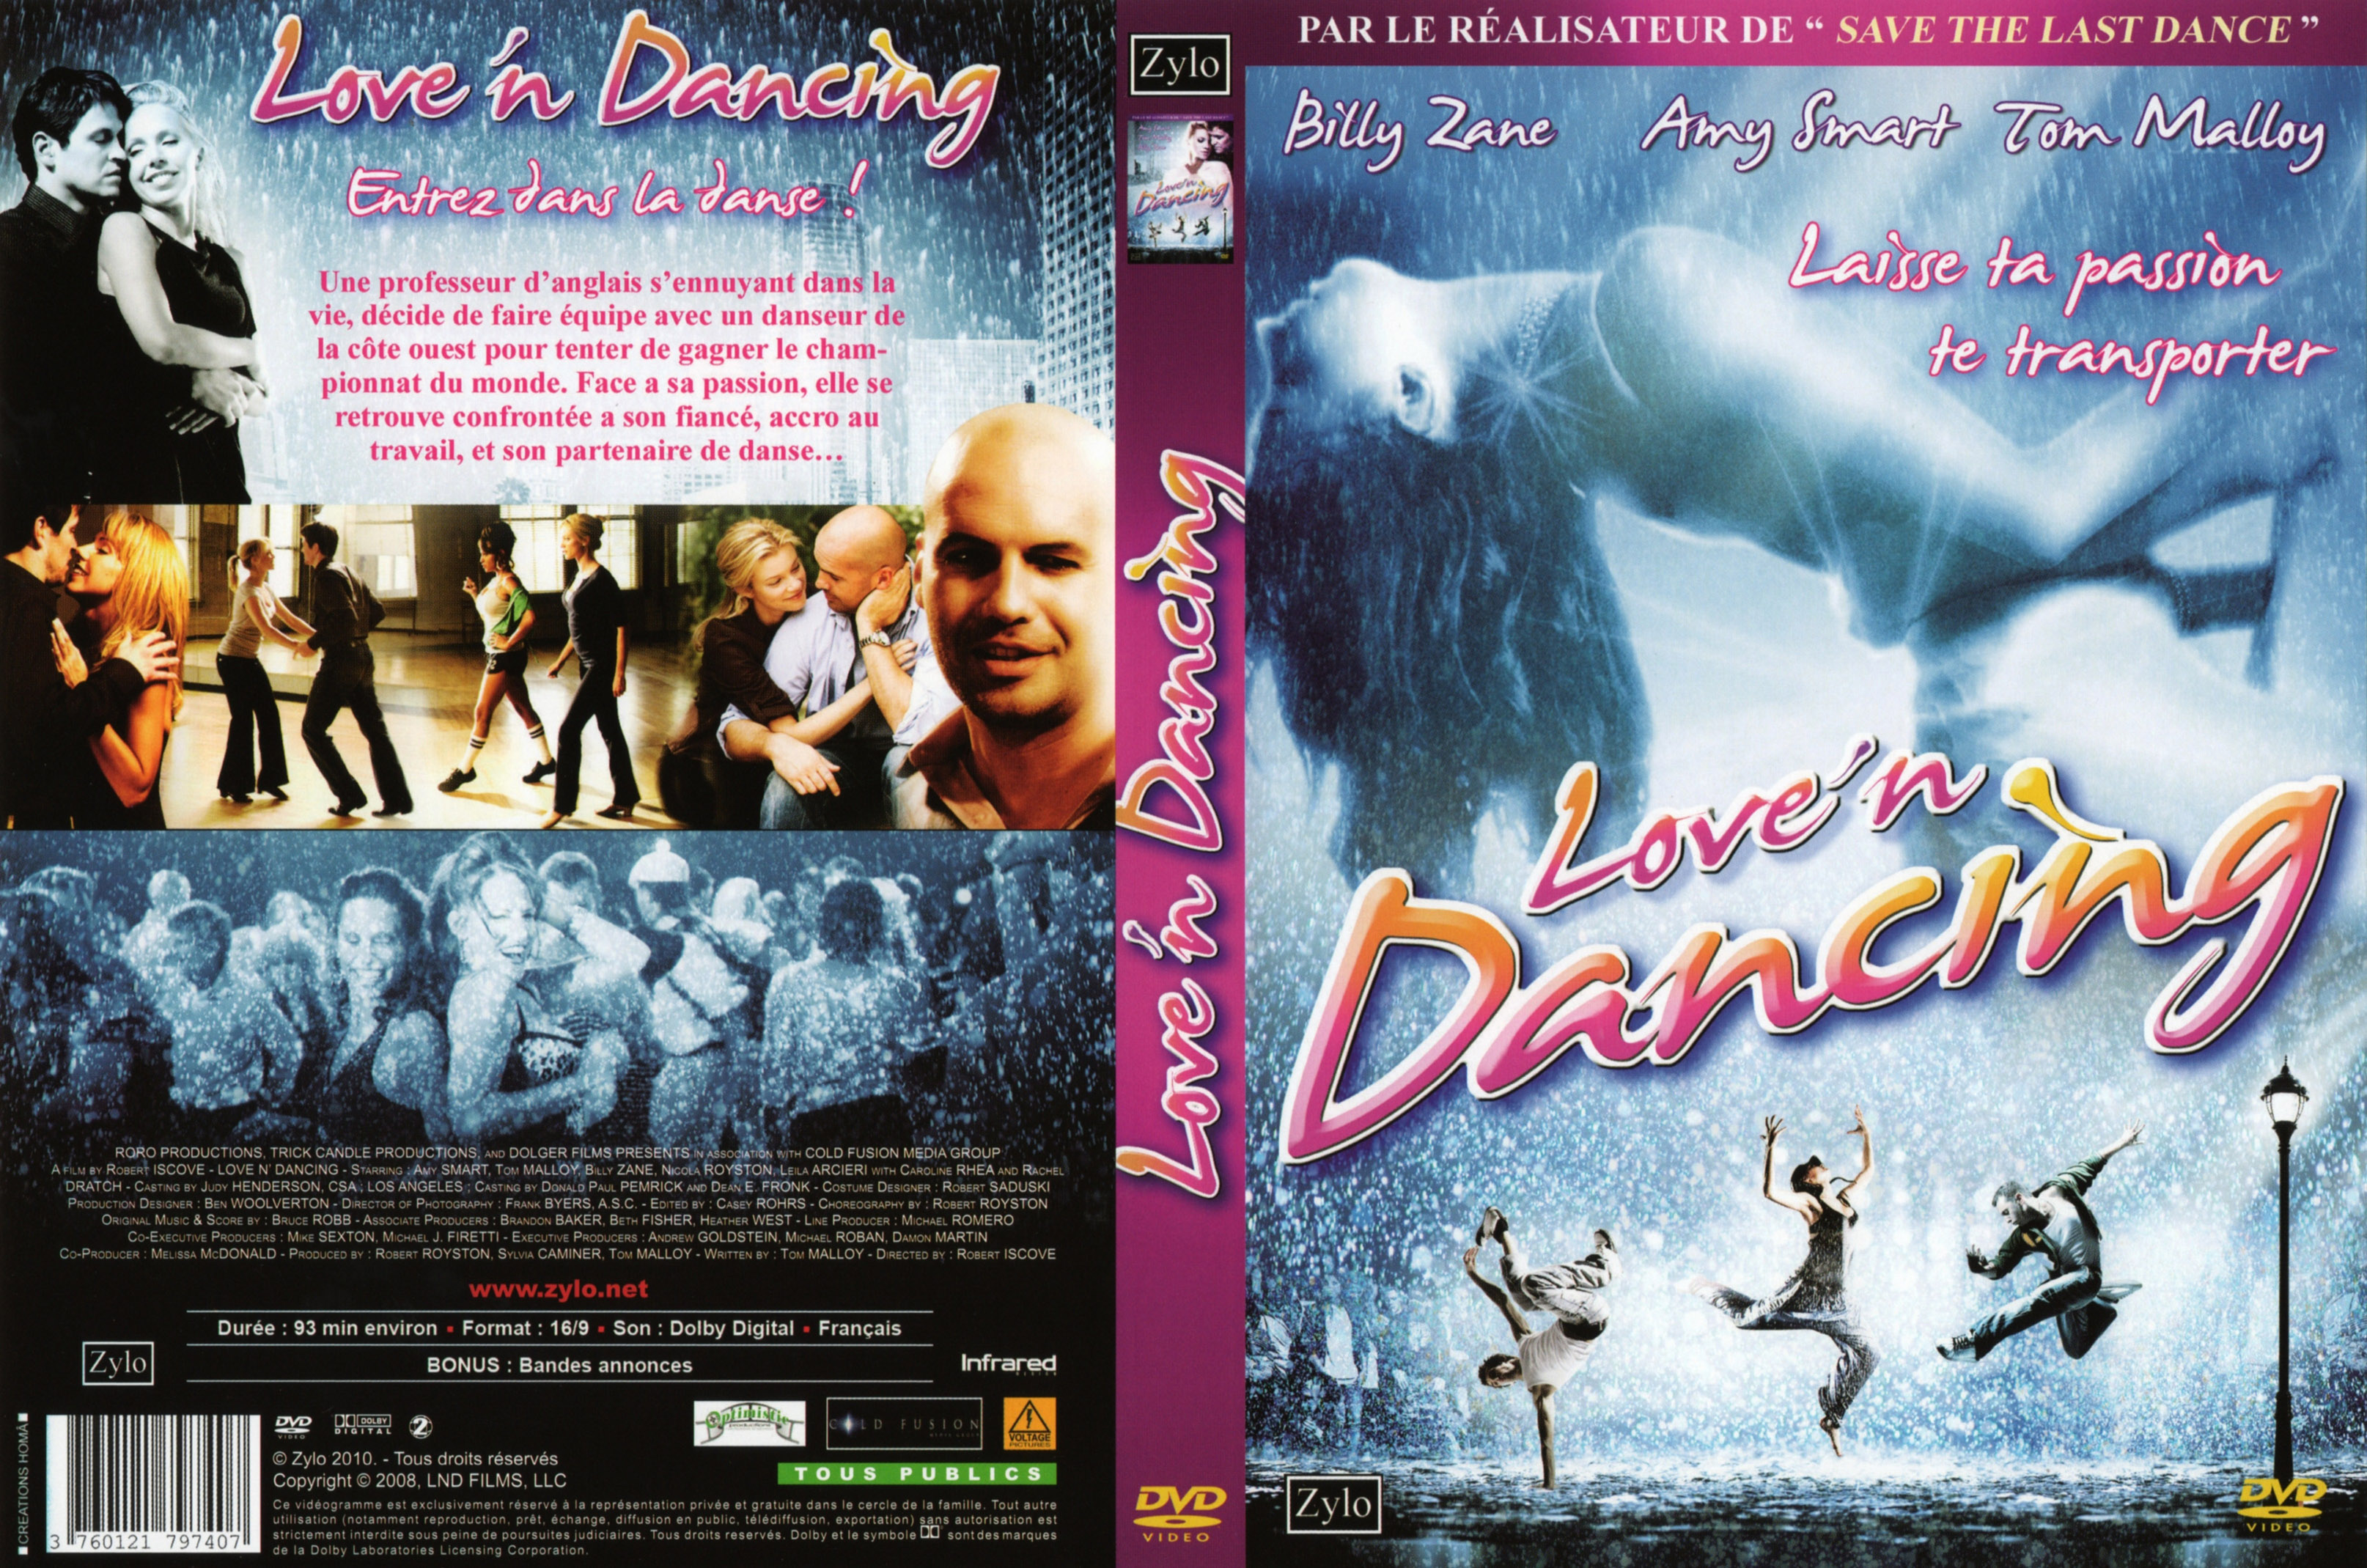 Jaquette DVD de Danse avec les loups (BLU-RAY) - Cinéma Passion